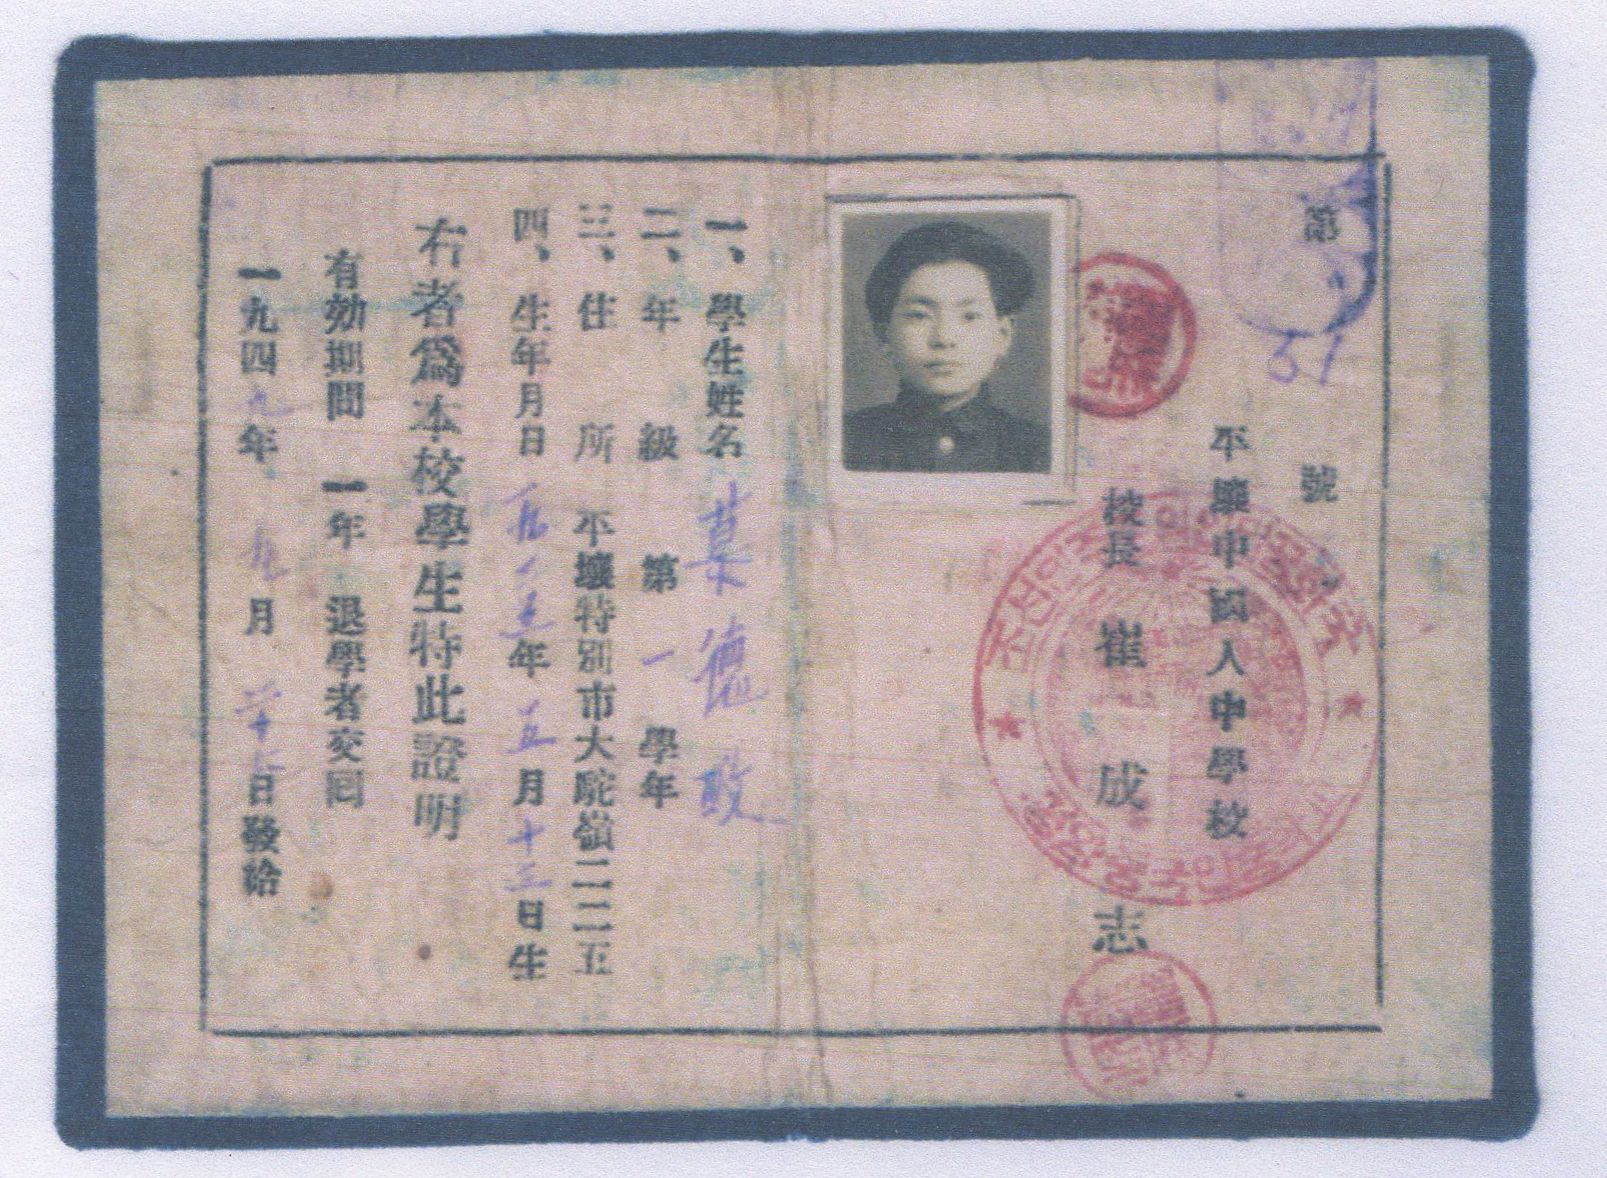 平壤中國人中學校的學生證